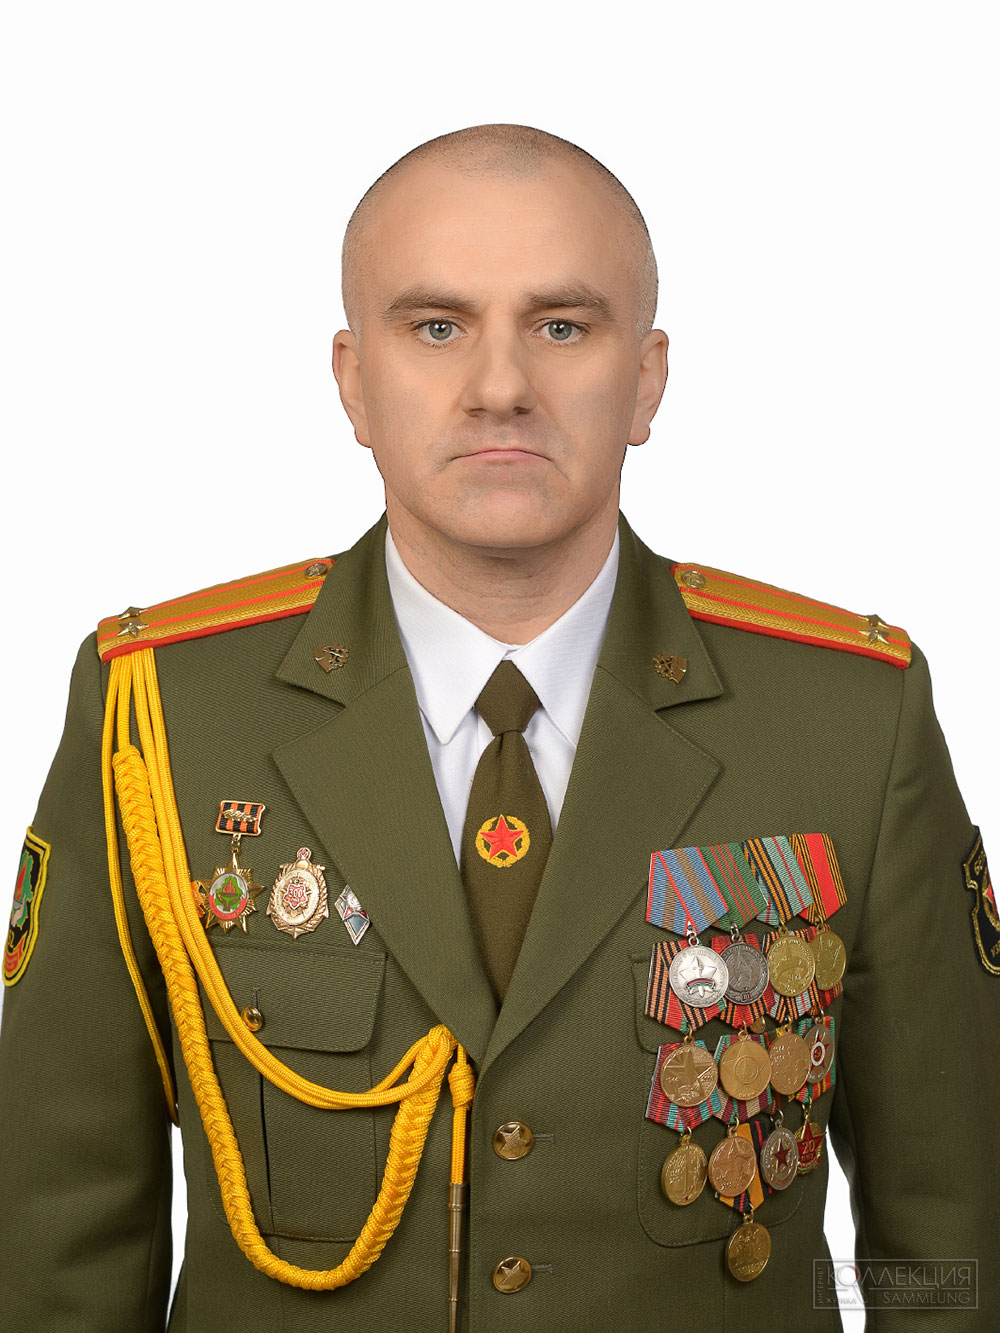 Подполковник А.П. Трубеко, с 2012 г. по 2021 г., командир 52 оспб. На парадной форме у него шитая нарукавная нашивка военнослужащего 52 оспб образца 2017 года. Фото 2019 г.